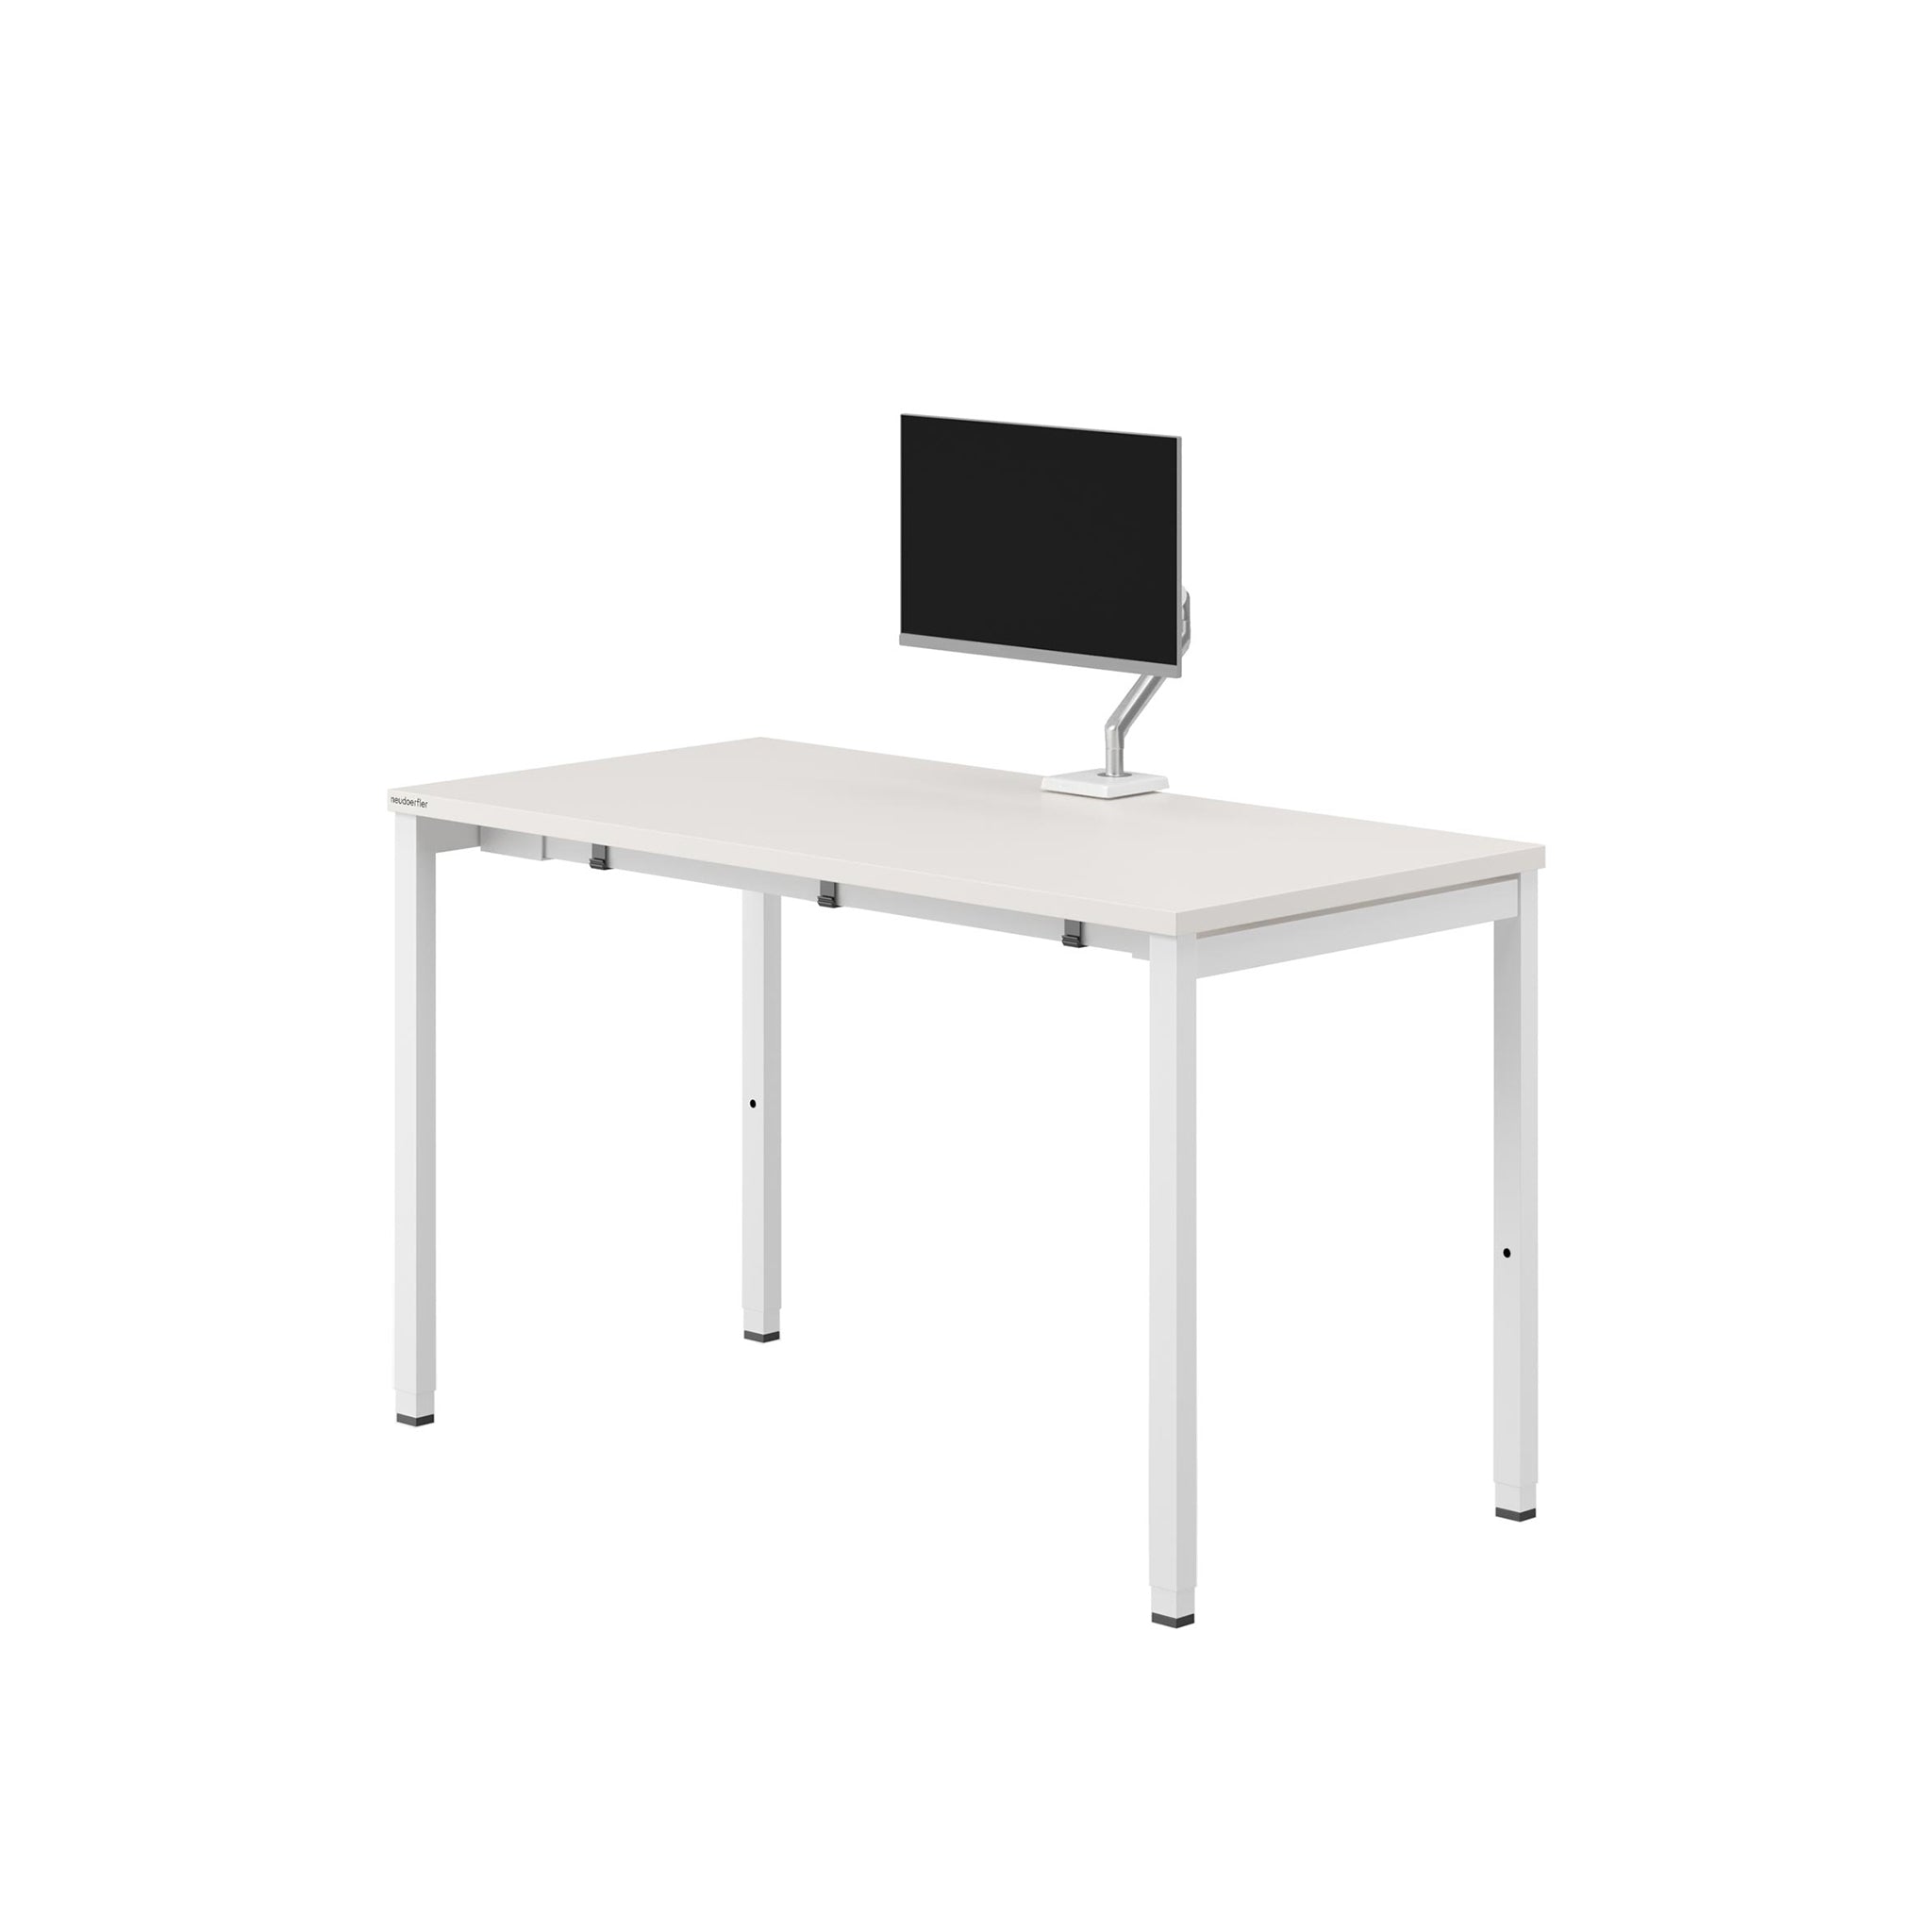 Ein weißer Arbeitstisch mit 4-Fuß-Gestell vor weißem Hintergrund. An dem Tisch ist eine weiß-silberne Monitorhalterung befestigt, die einen Computerbildschirm hält.